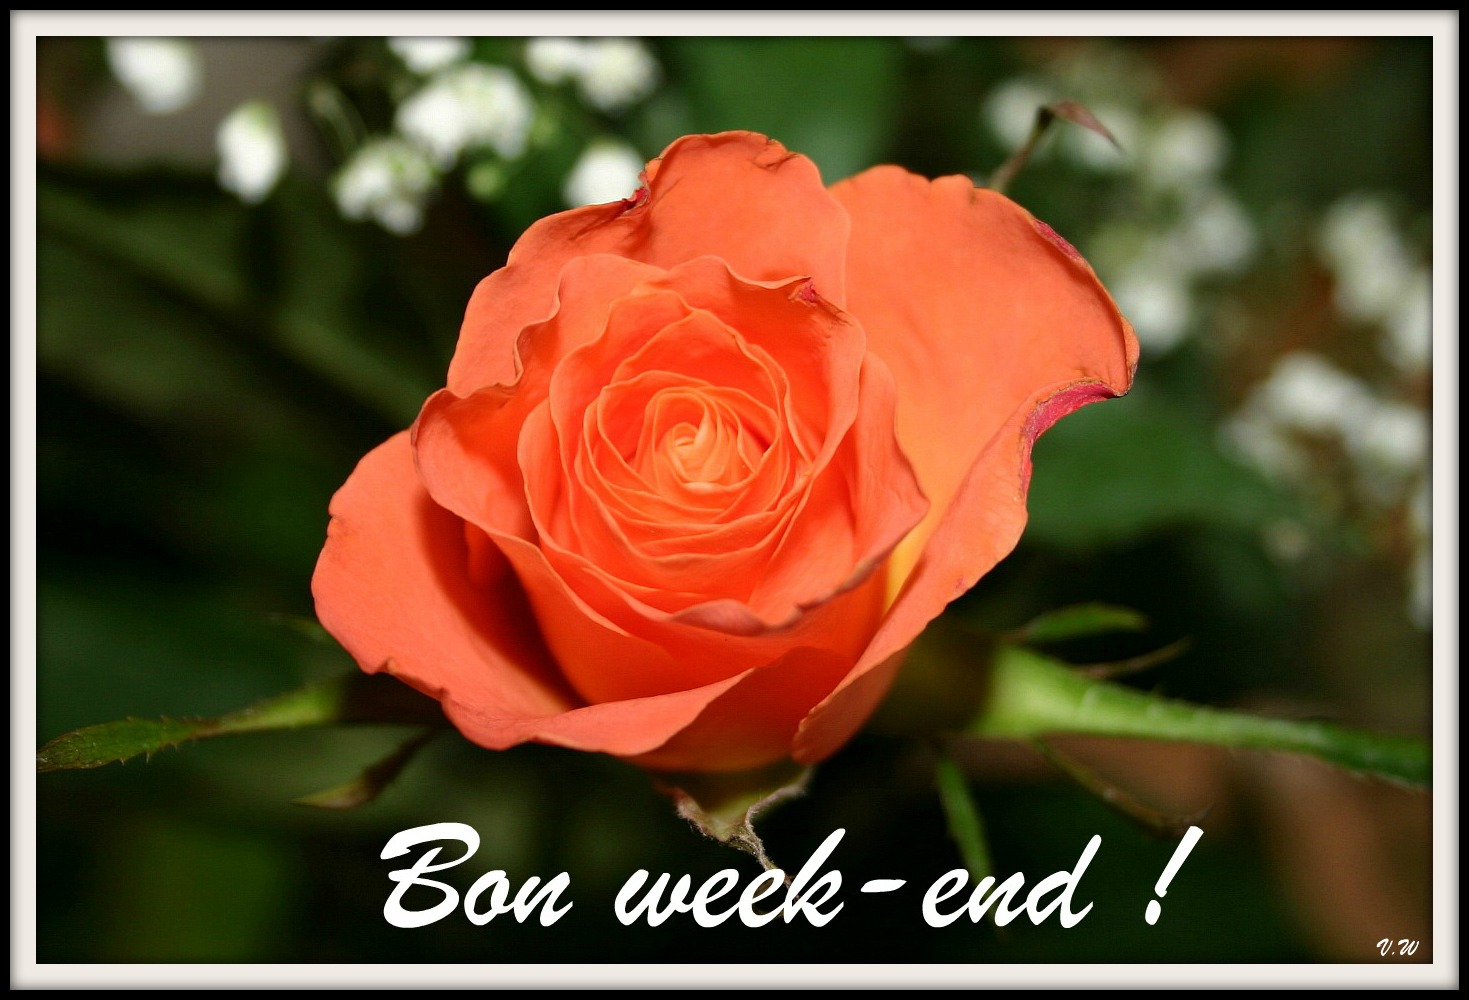 Cette rose pour vous souhaiter un bon week-end - PIXEL-GALERIE